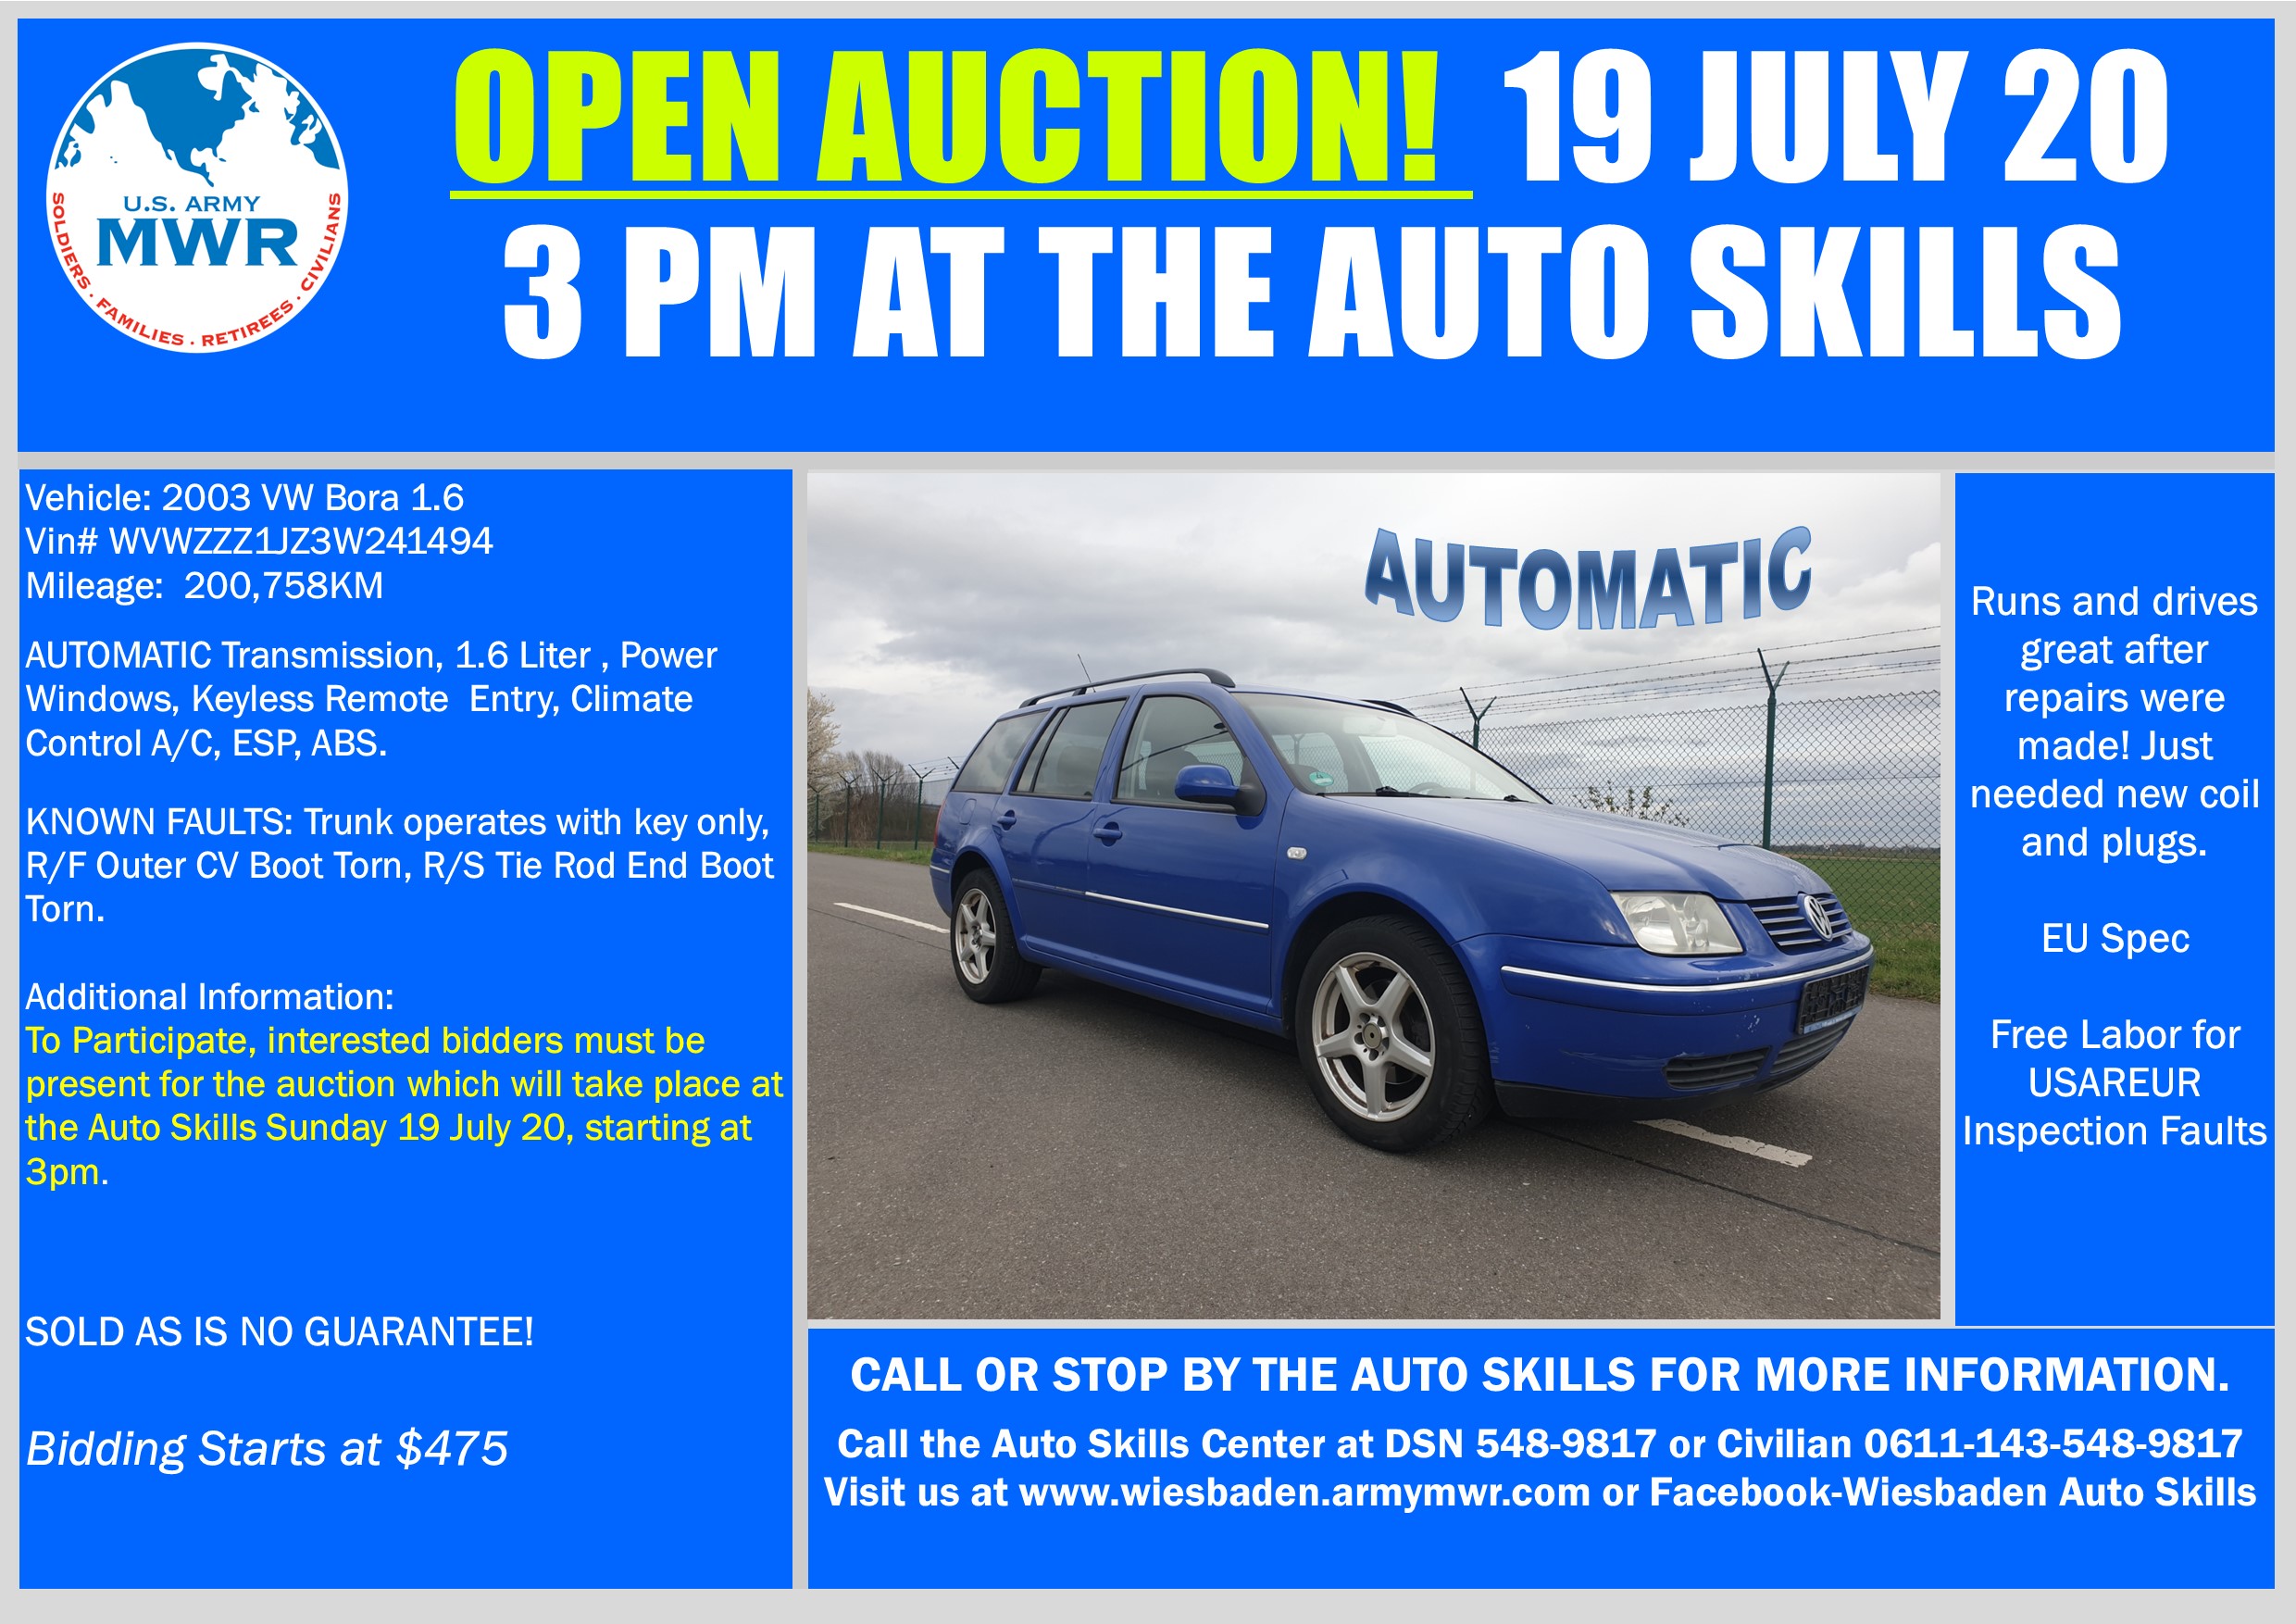 Sale VW Bora Open Auction 19 July 20.pub.jpg